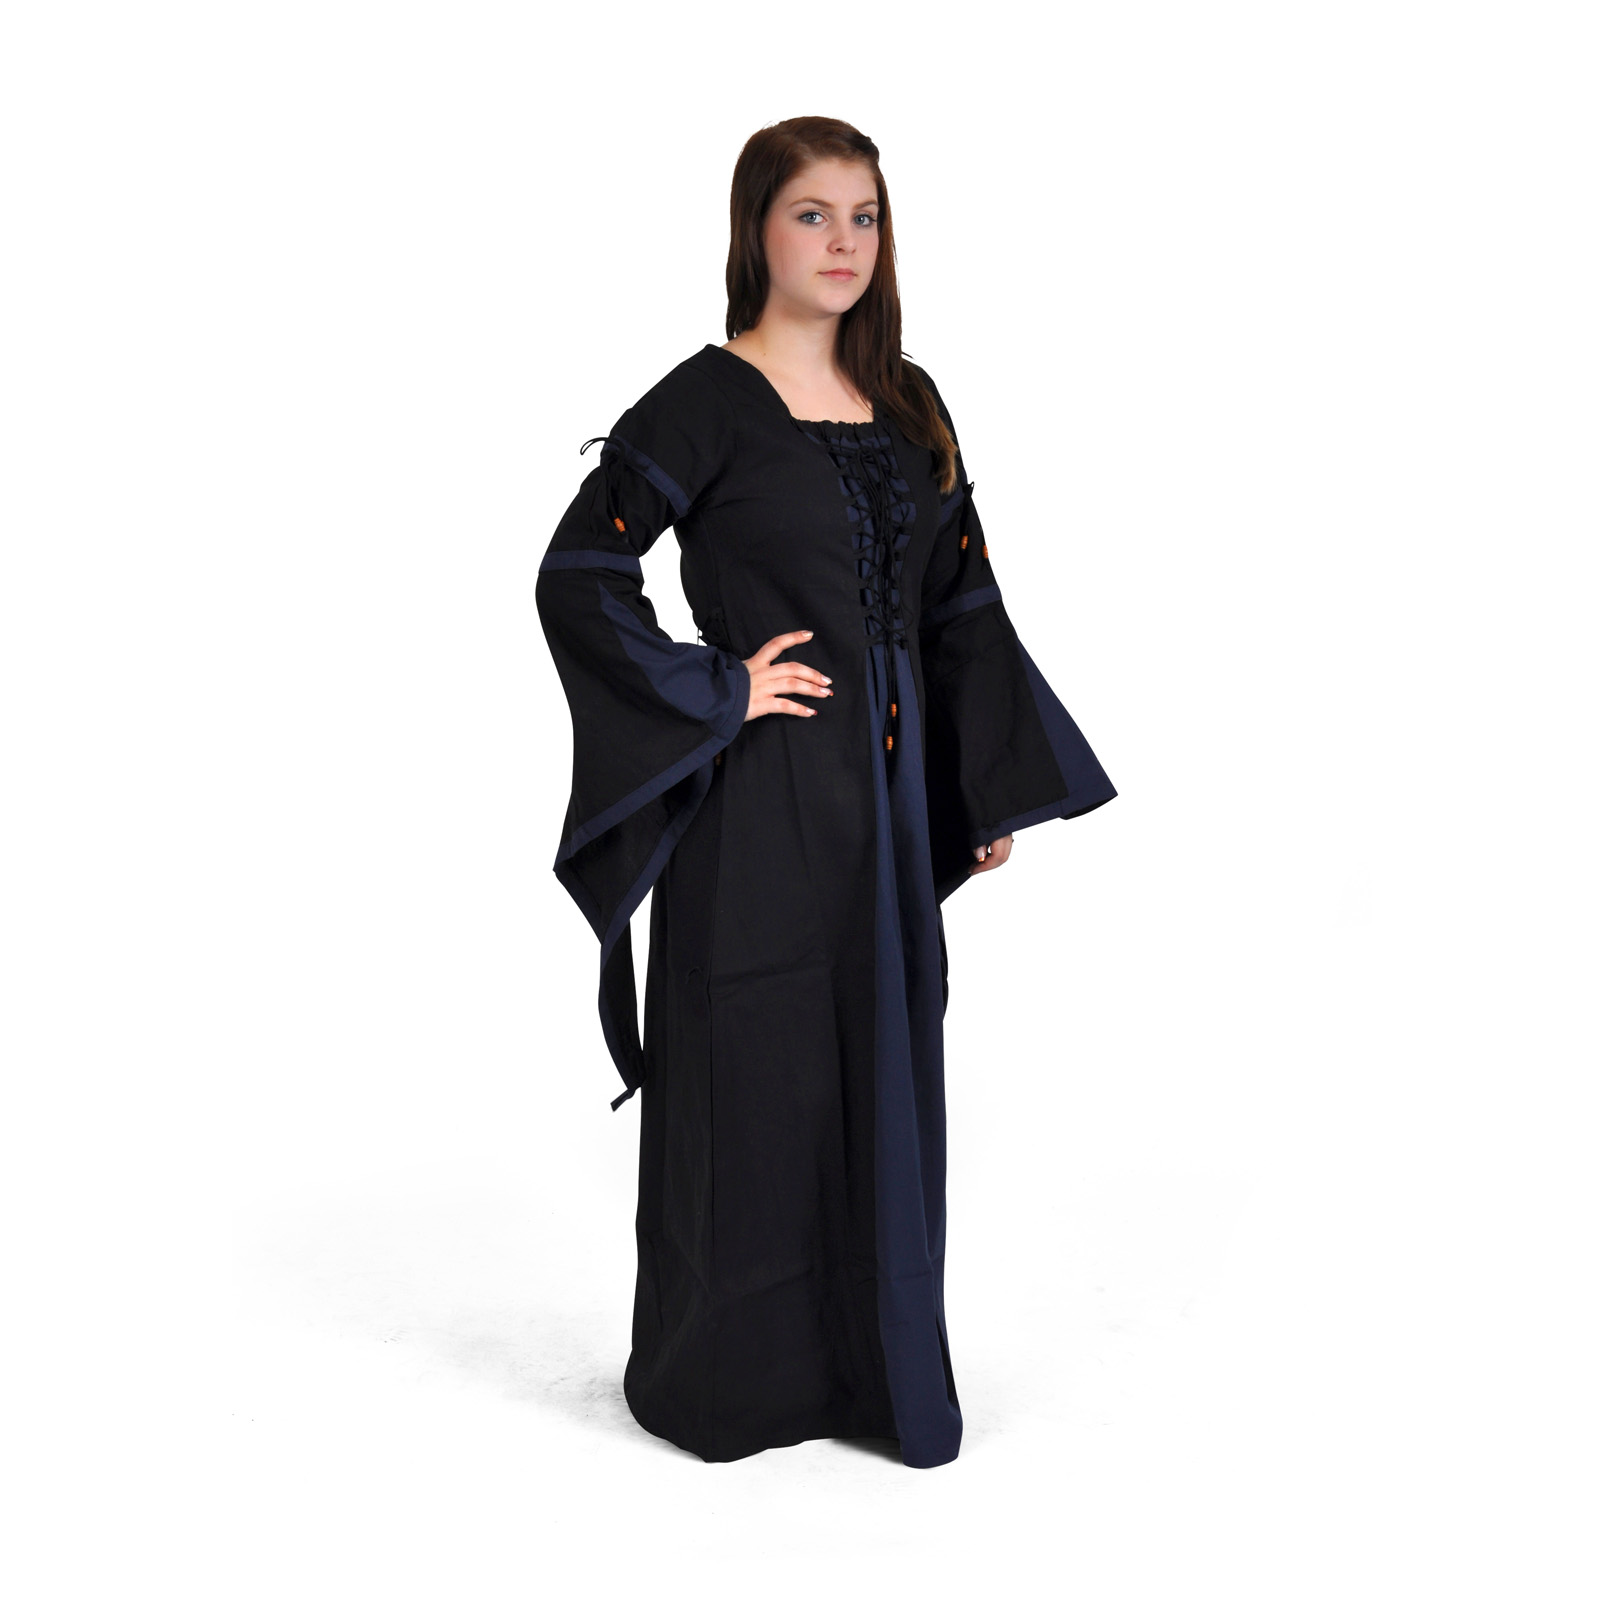 Elisa - medieval dress black-blue